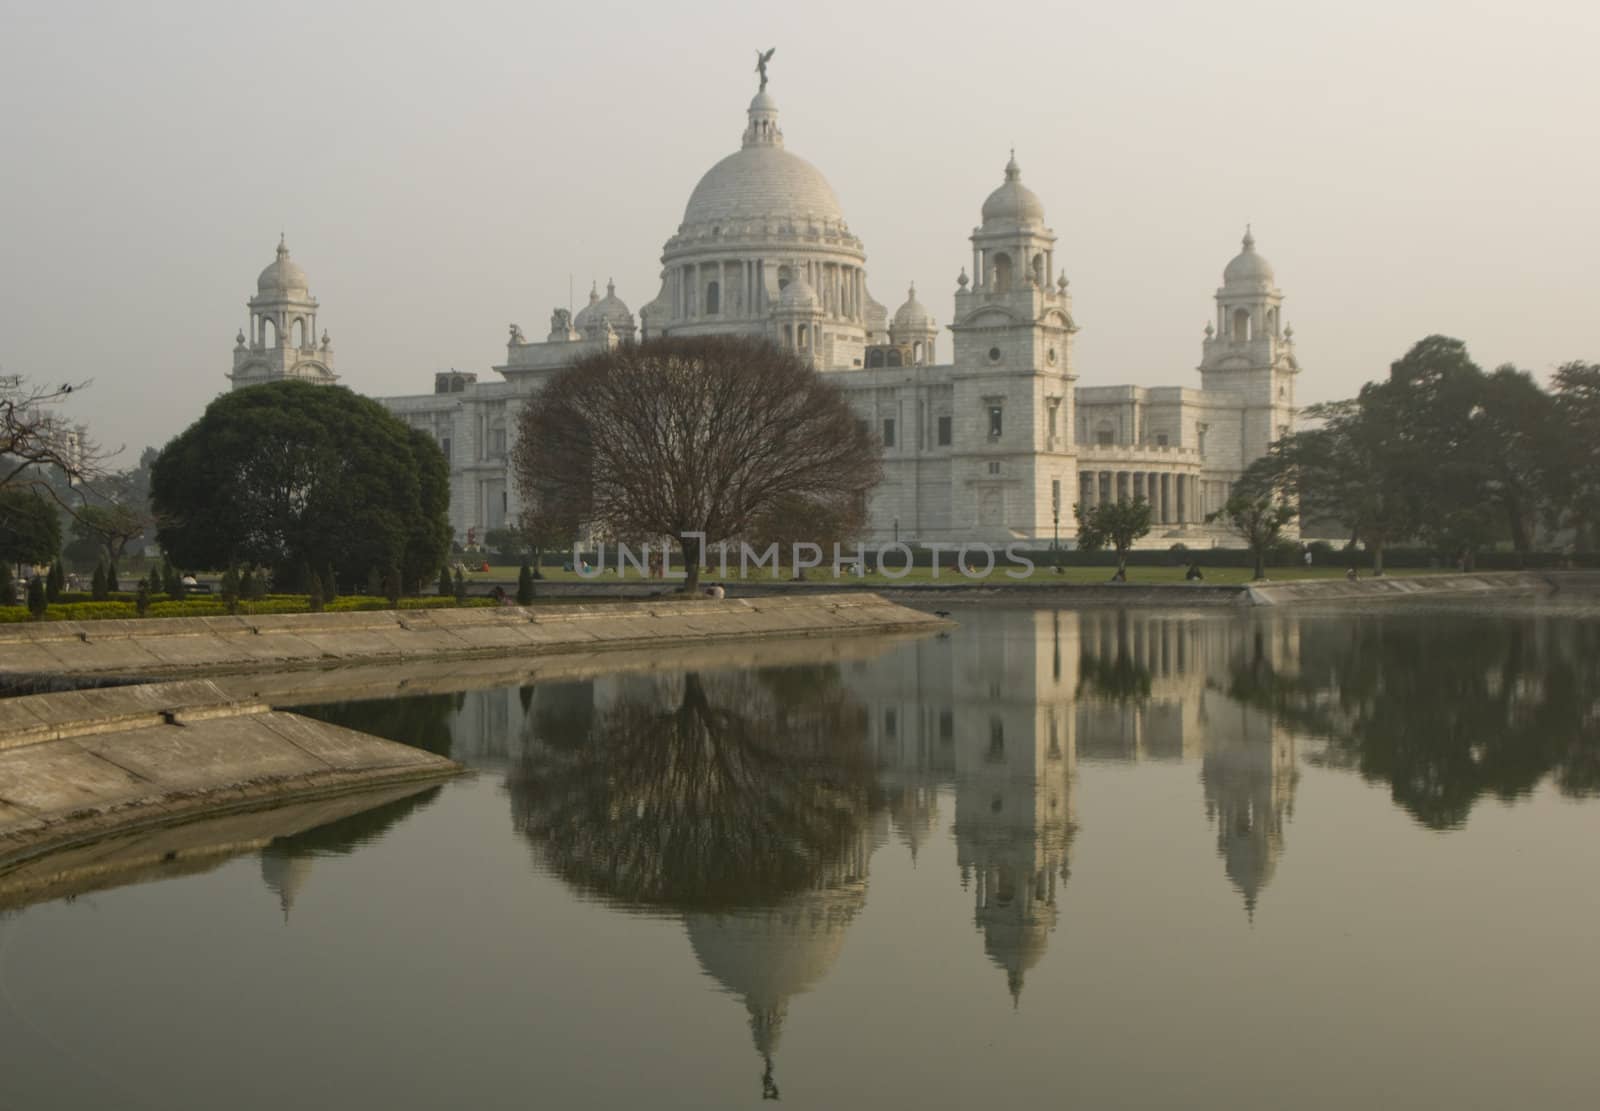 Victoria Memorial reflected in an ornamental lake at dusk. Kolkata, India